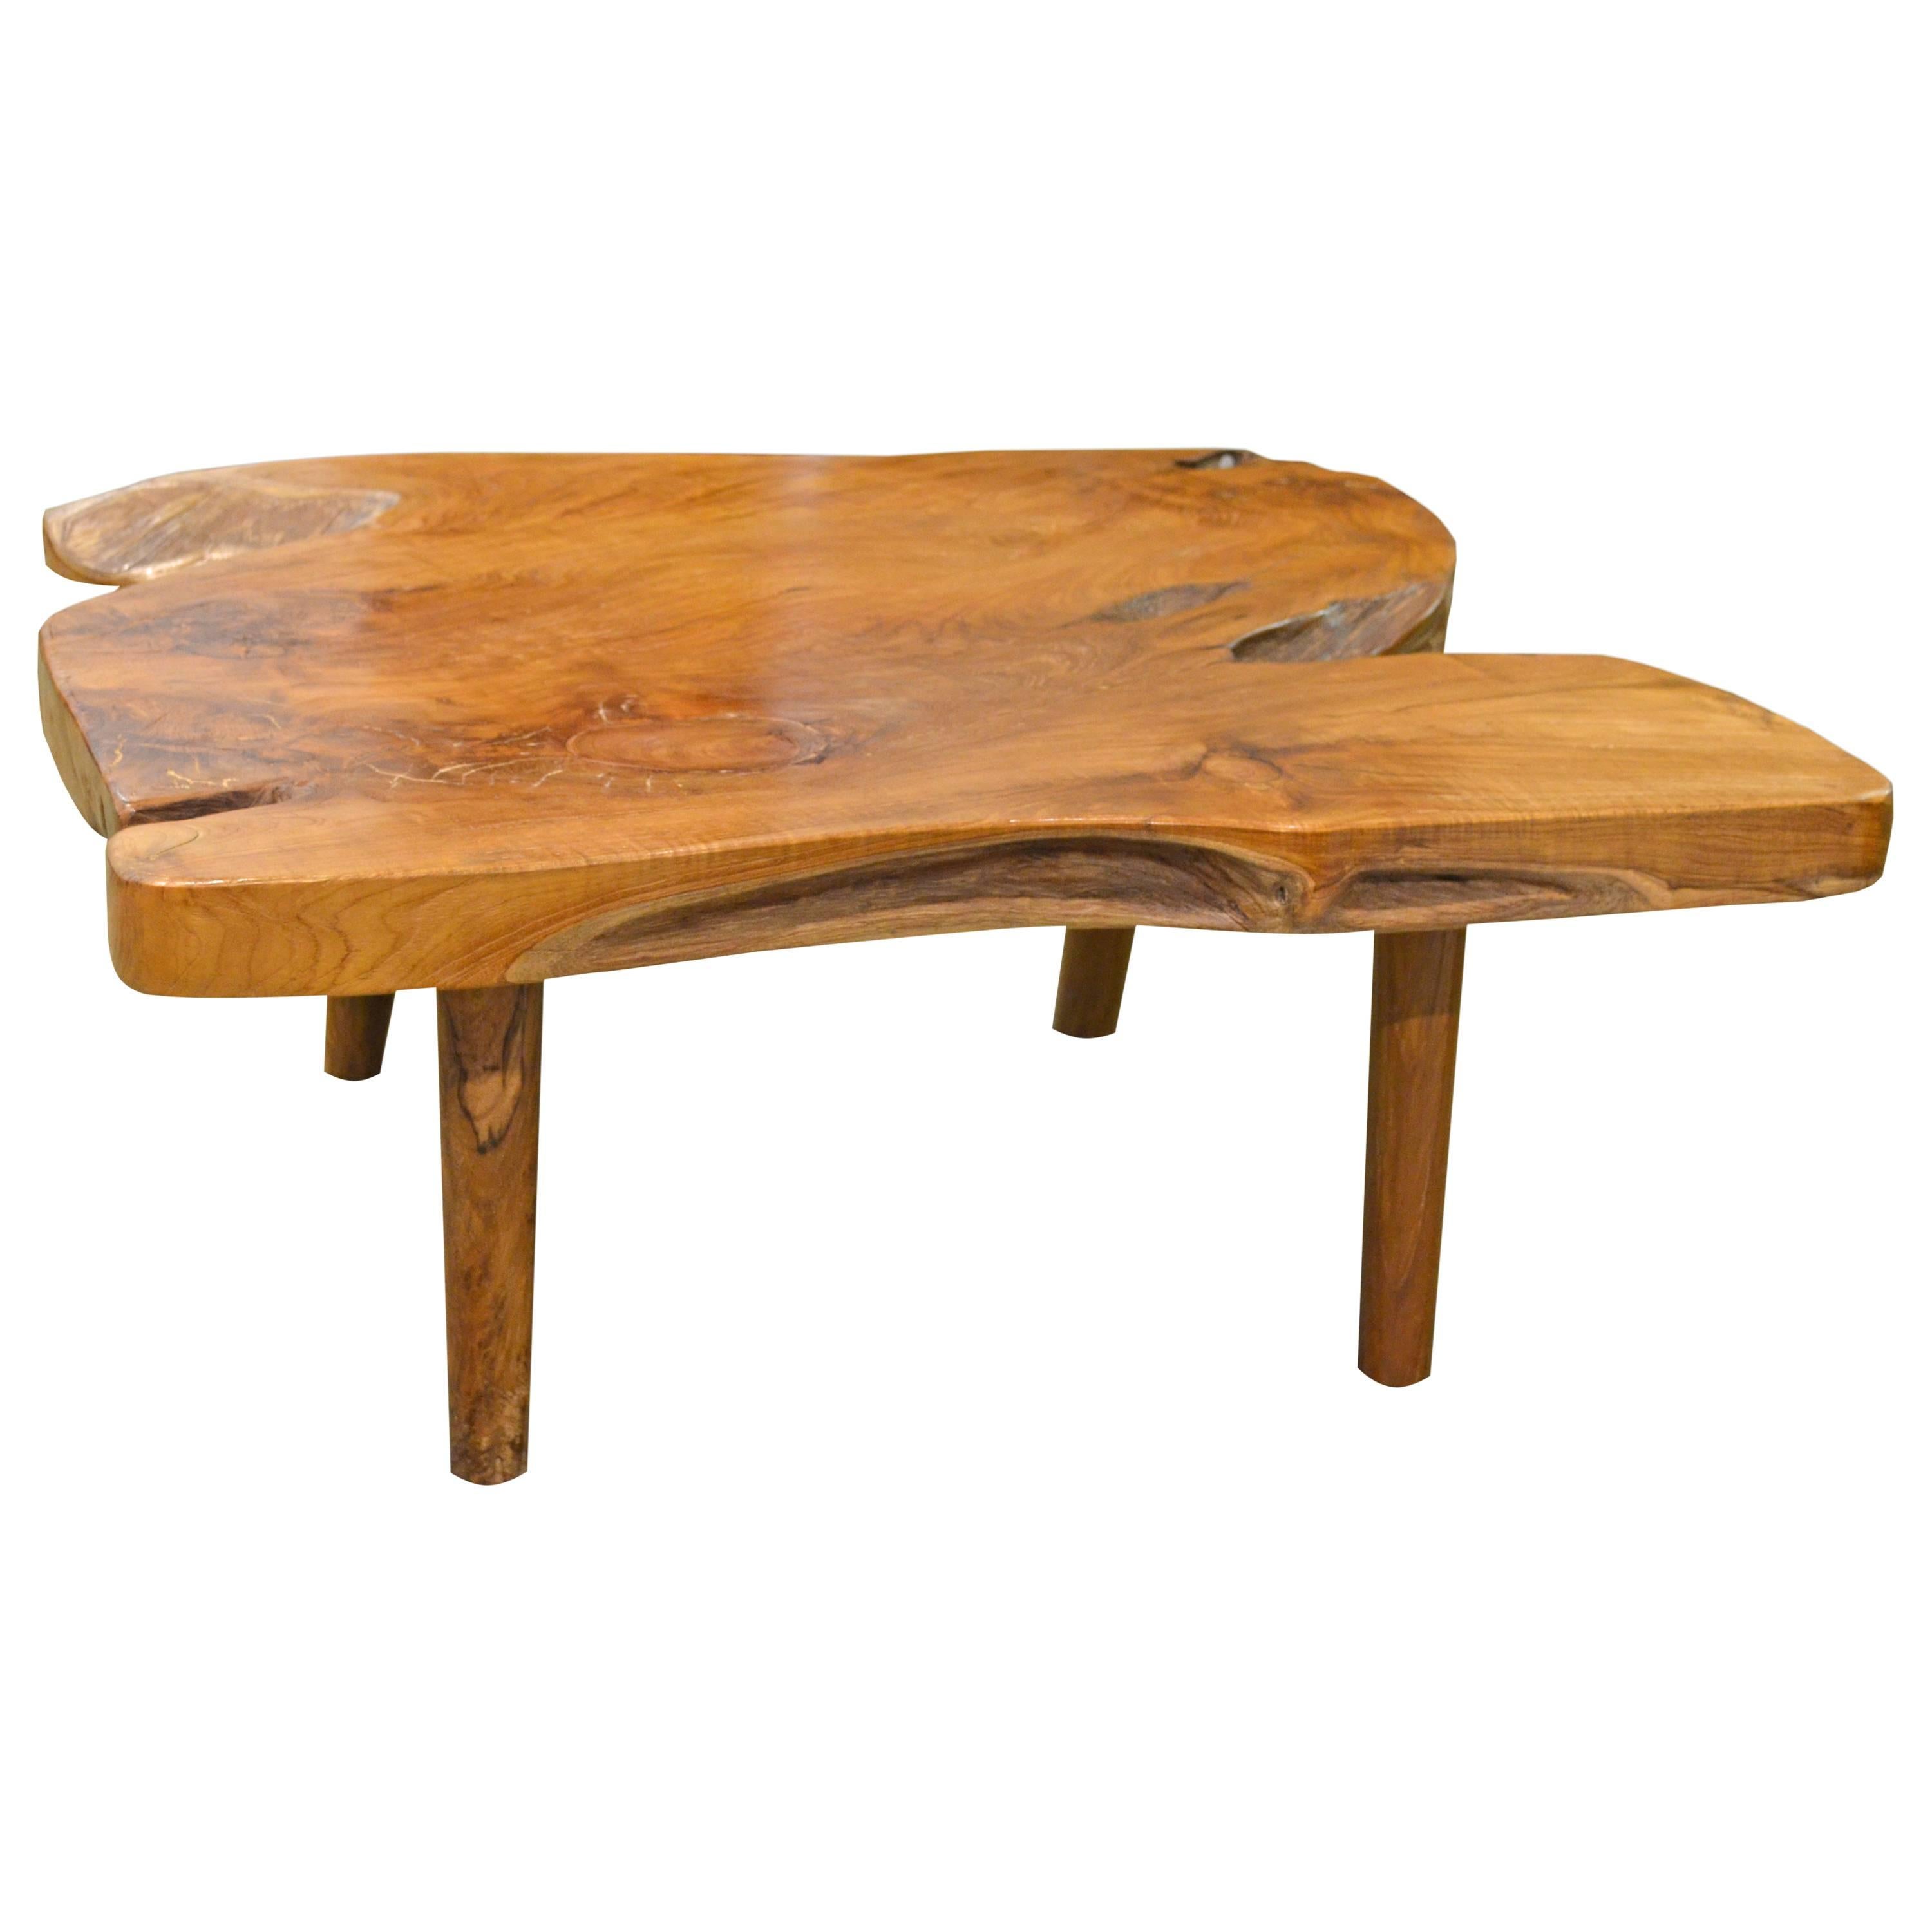 Mid-Century Style Organic Teak Wood Coffee Table or Side Table